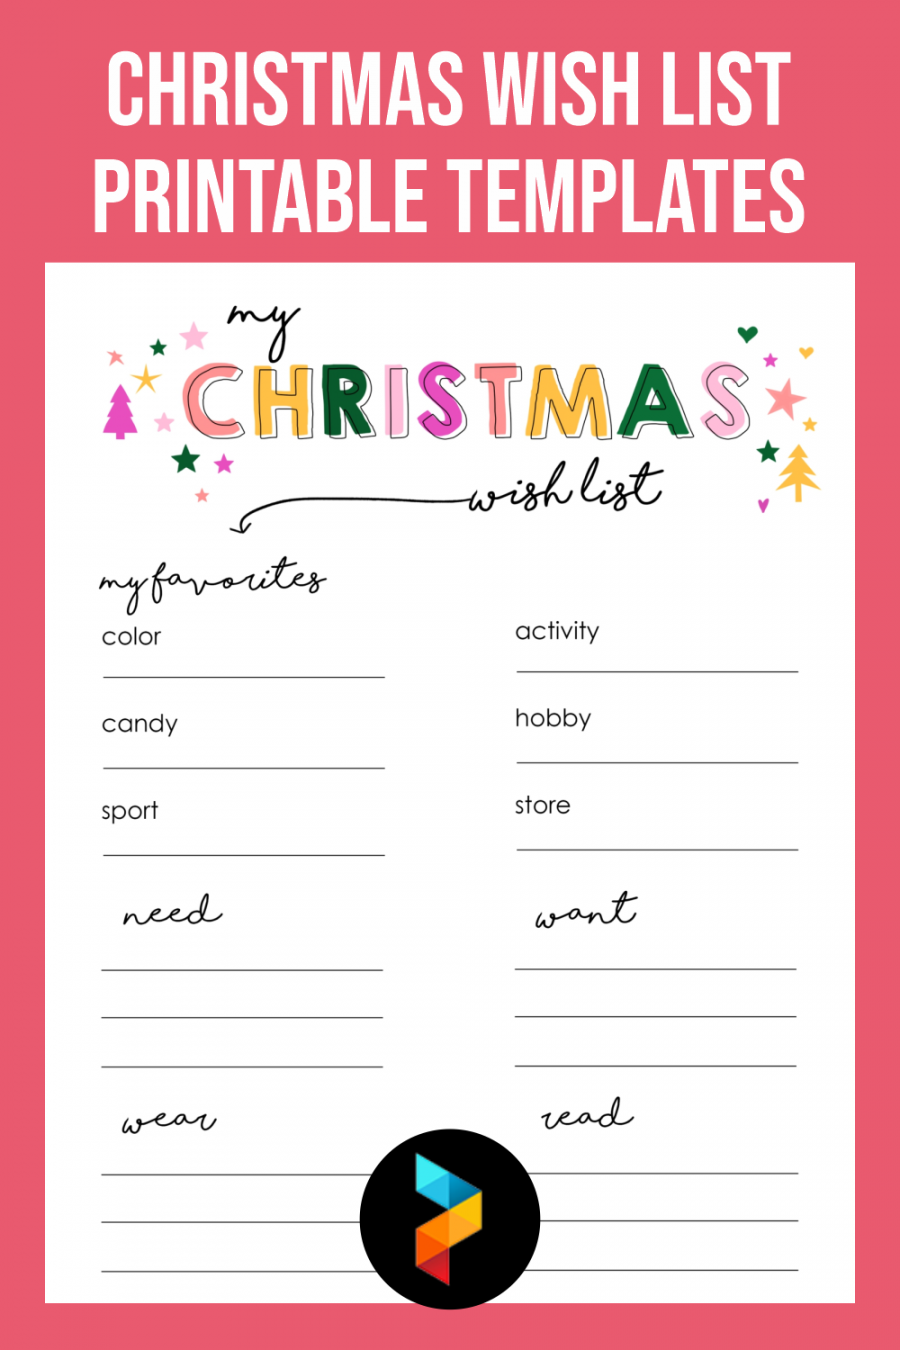 Free Printable Christmas List Template - Printable -  Best Christmas Wish List Free Printable Templates - printablee